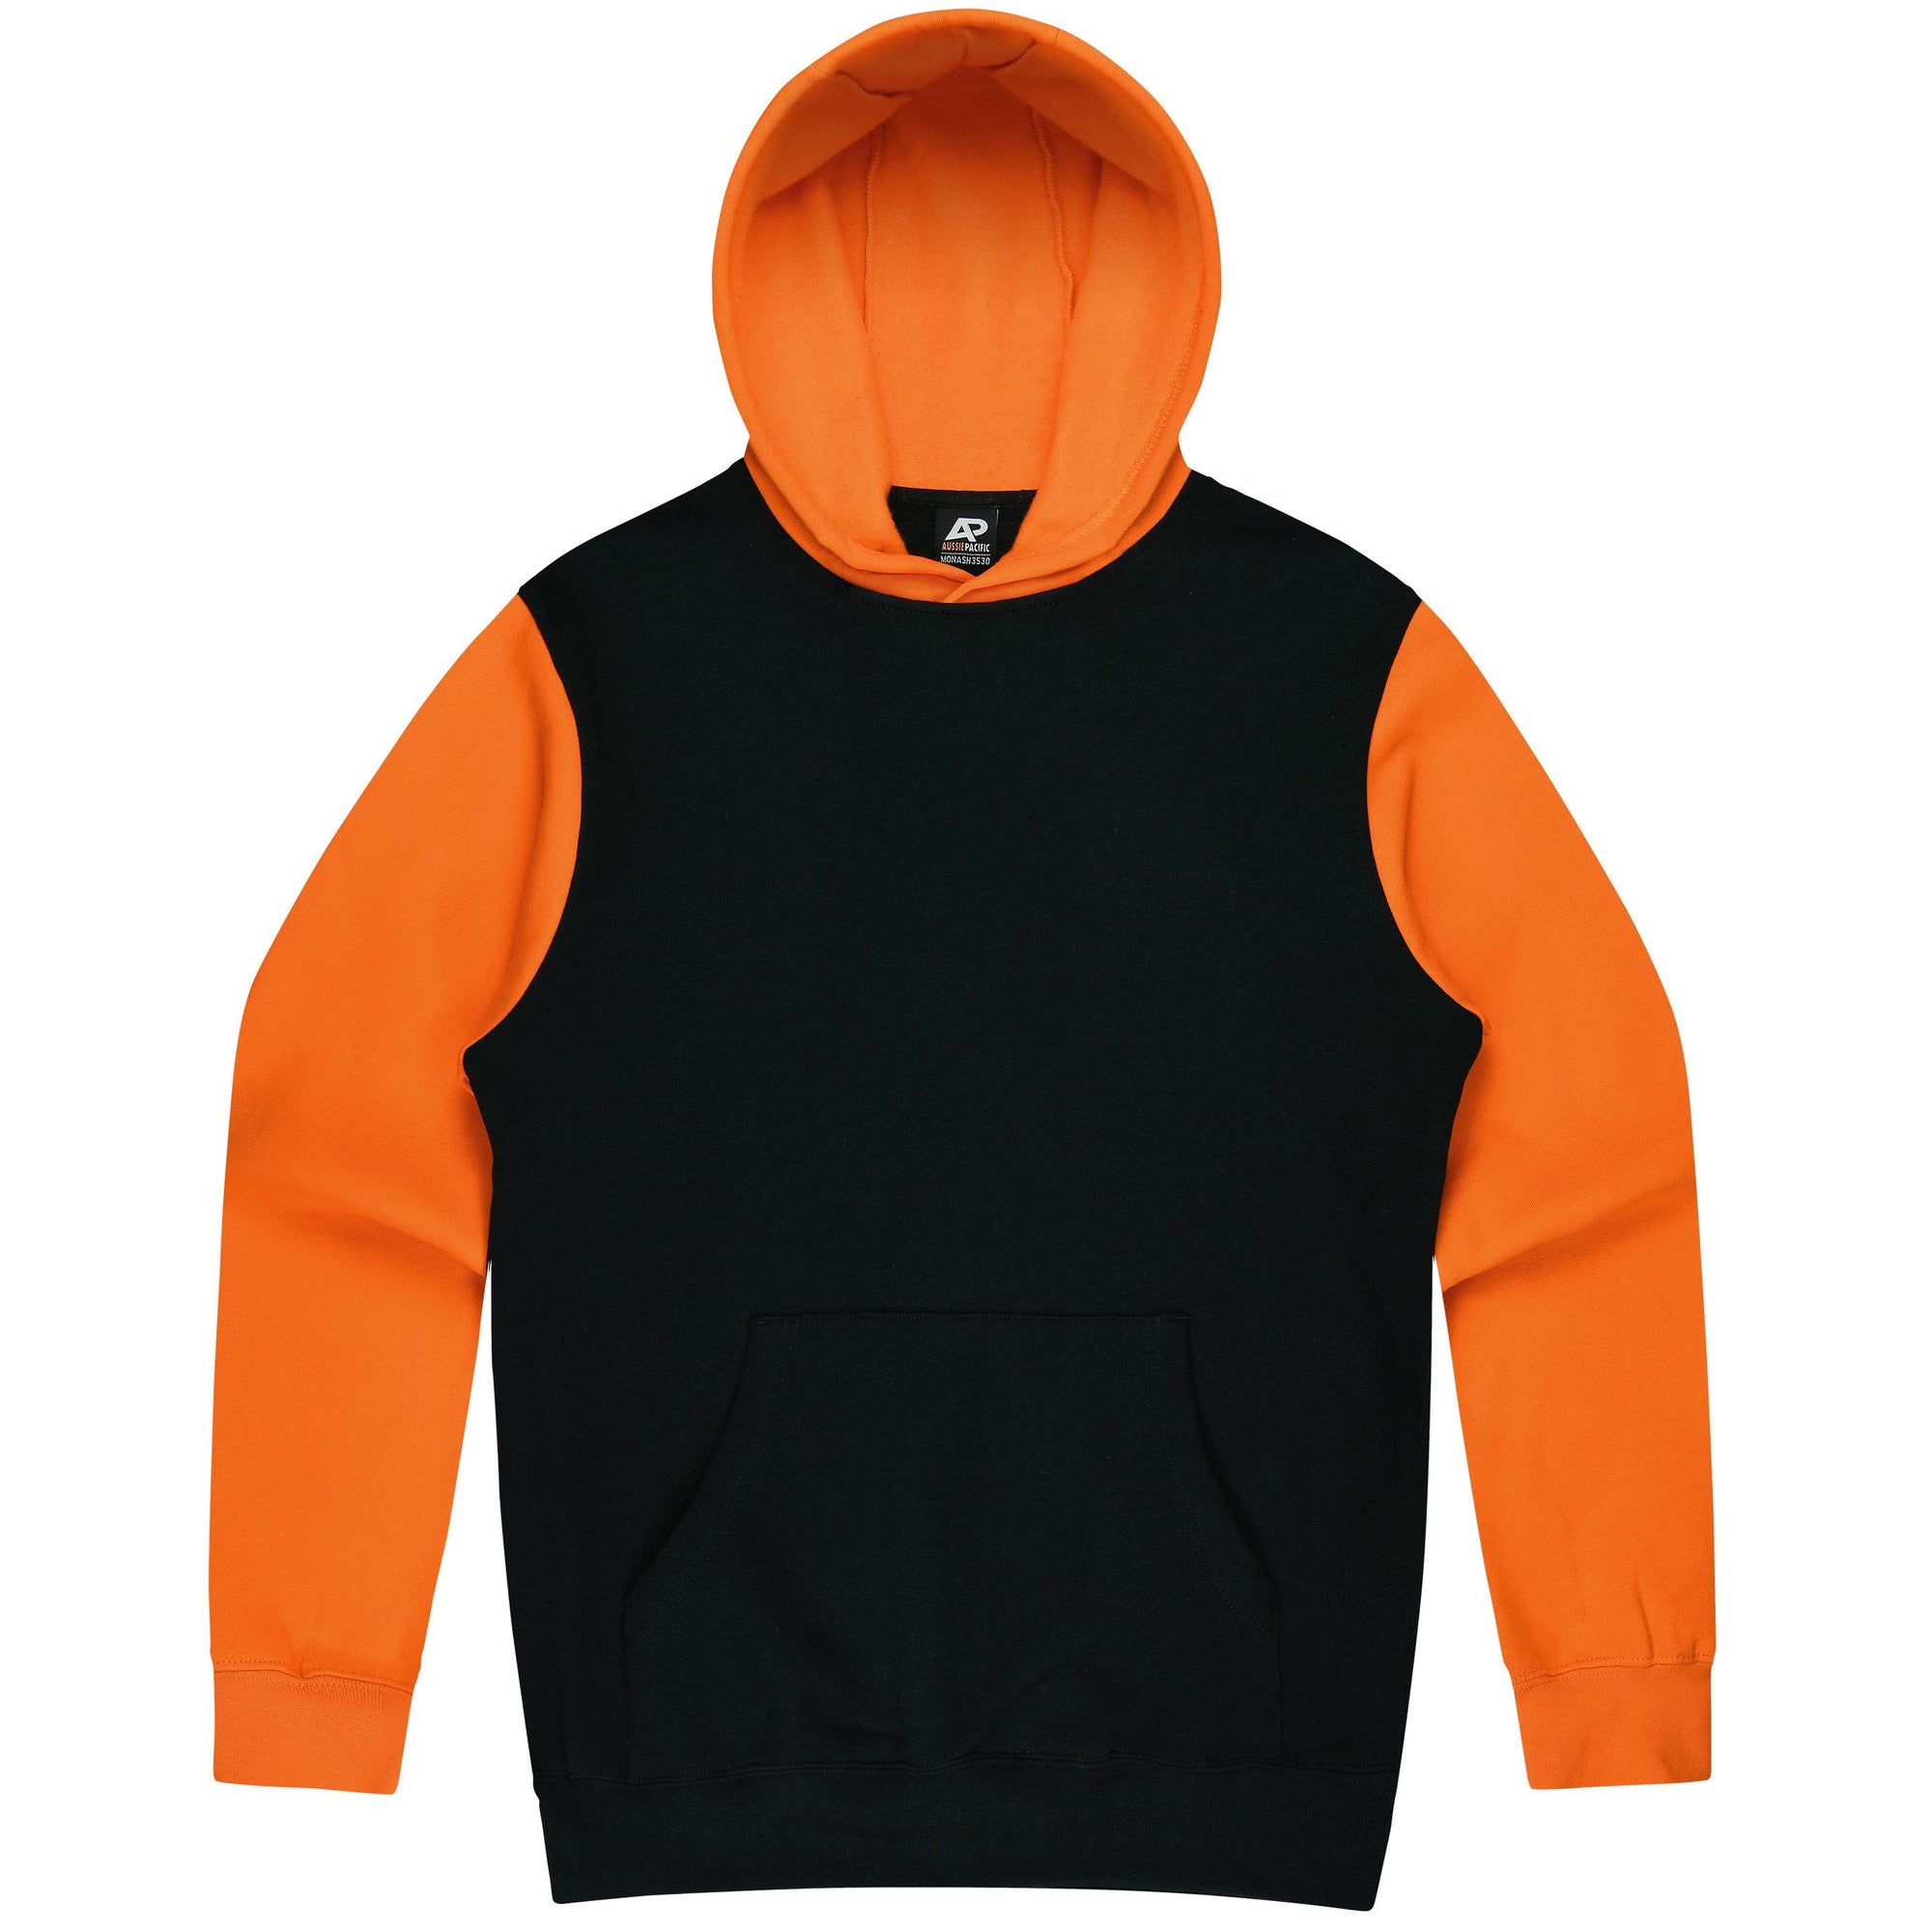 Custom Printed Monash Kids Hoodies - Black/Electric Orange